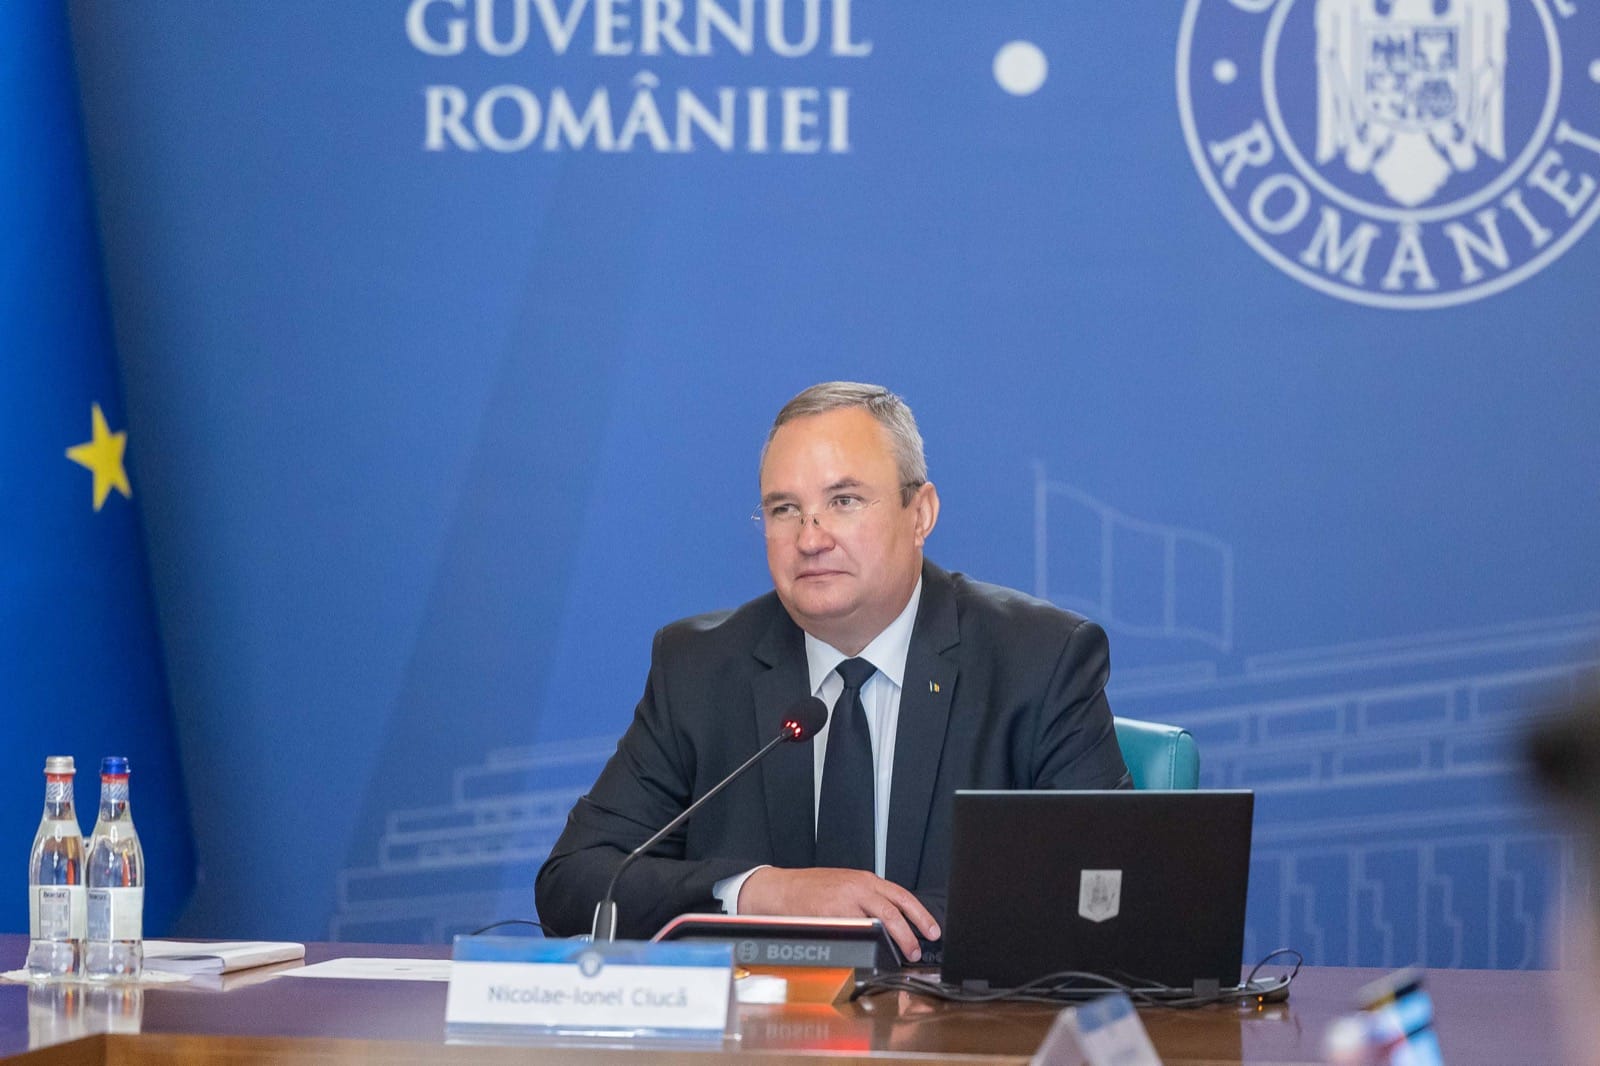 Nicolae Ciucă anunță noi servicii de sănătate împotriva afecțiunilor maligne începând cu data de 1 iulie